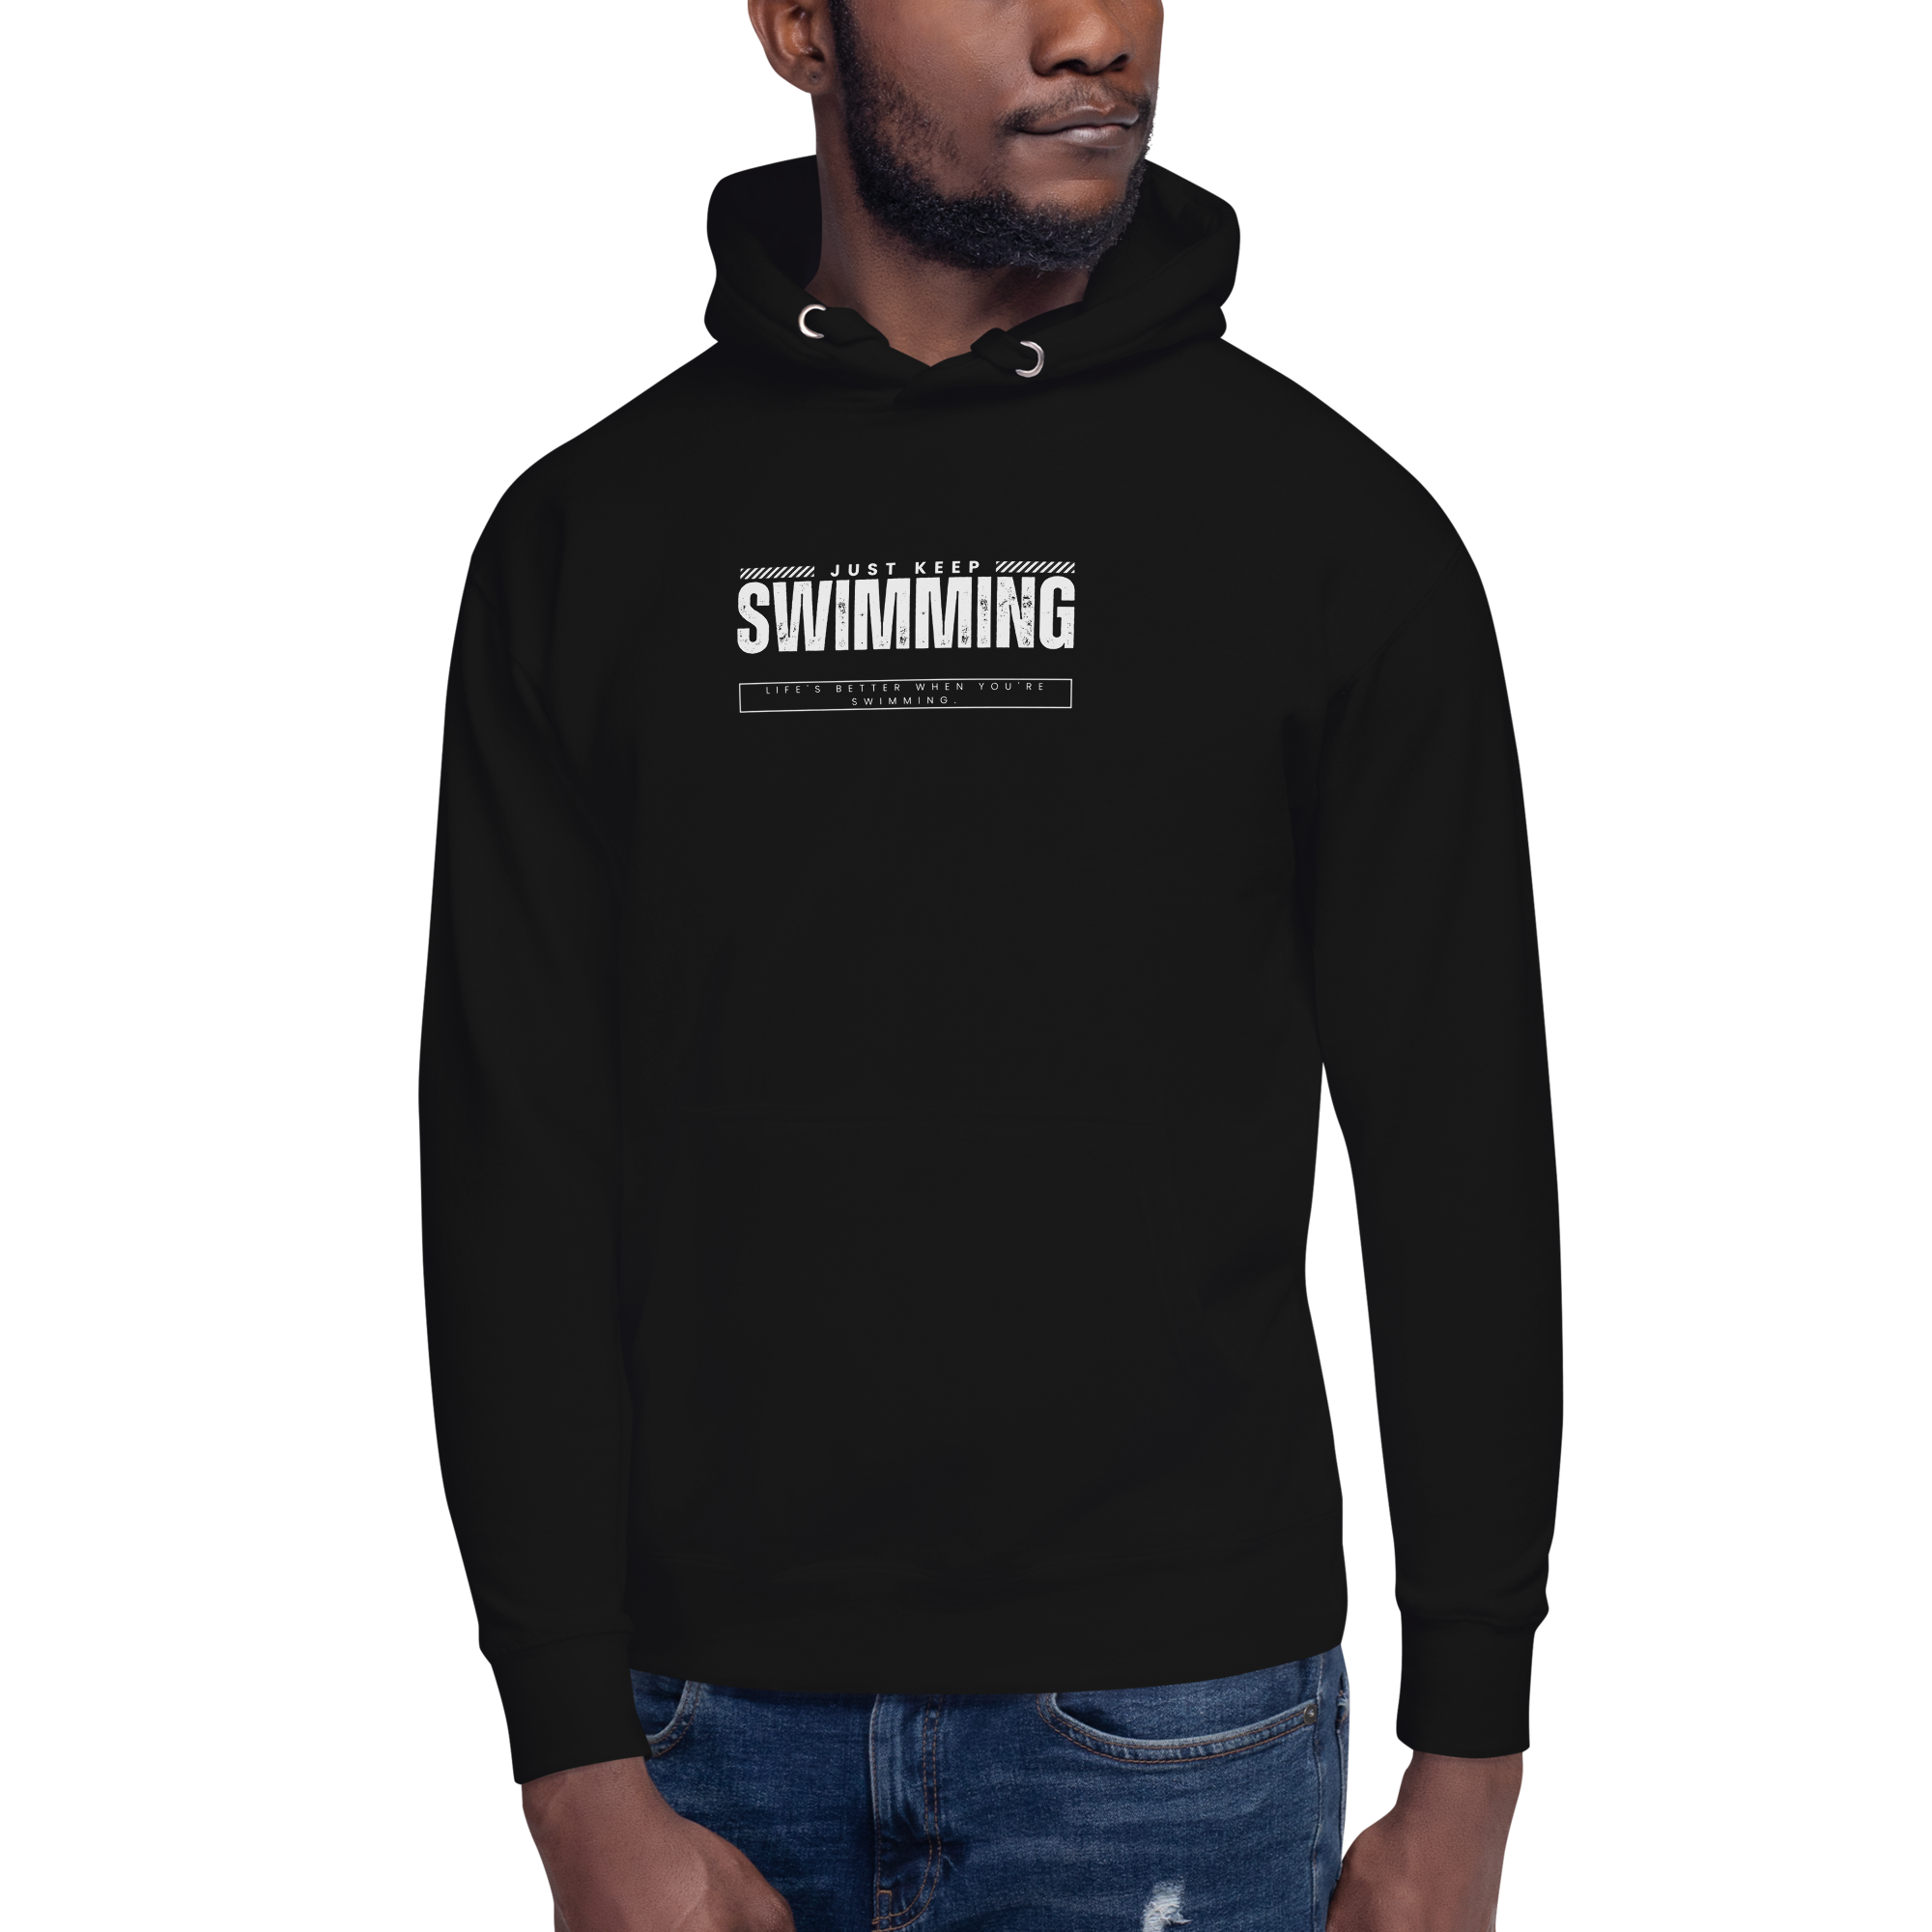 Swimmer hoodie